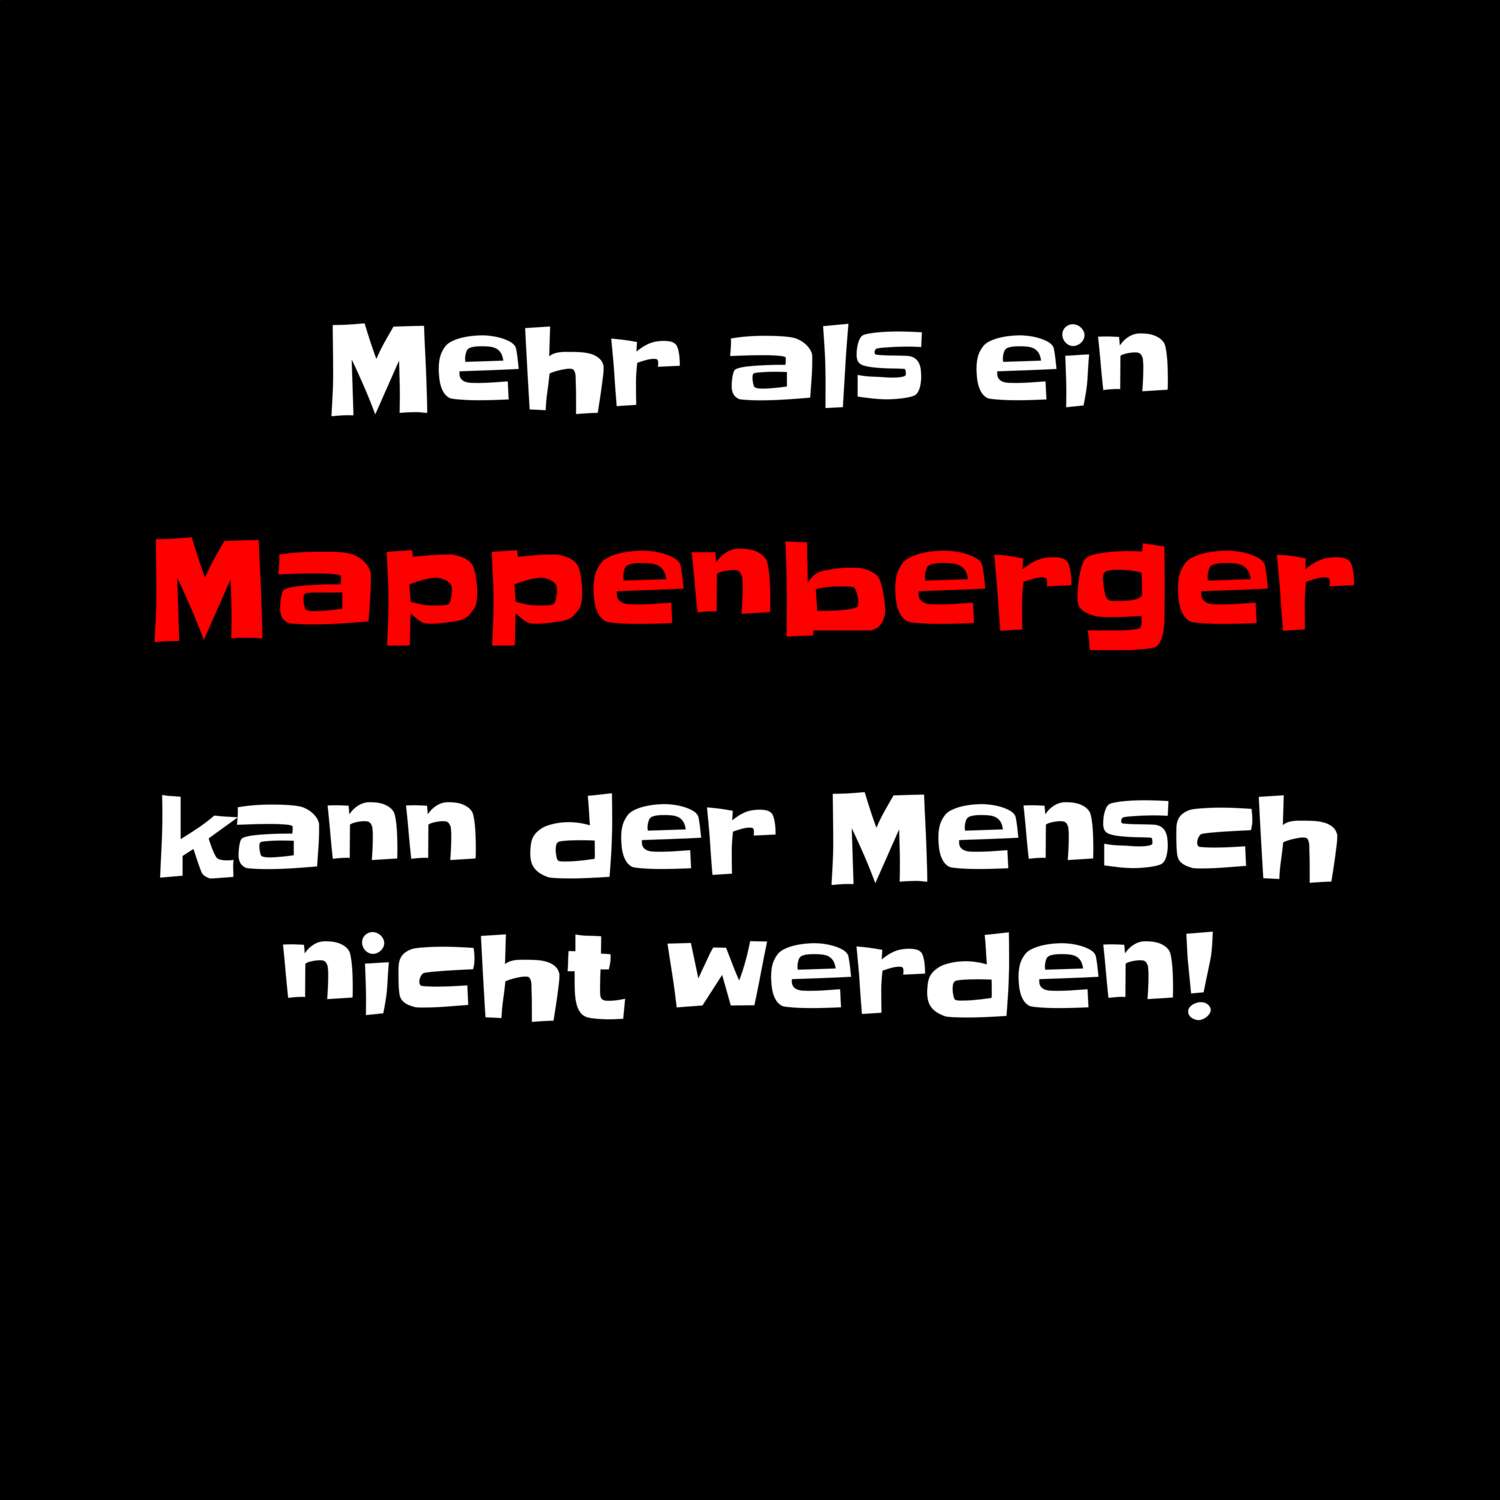 Mappenberg T-Shirt »Mehr als ein«